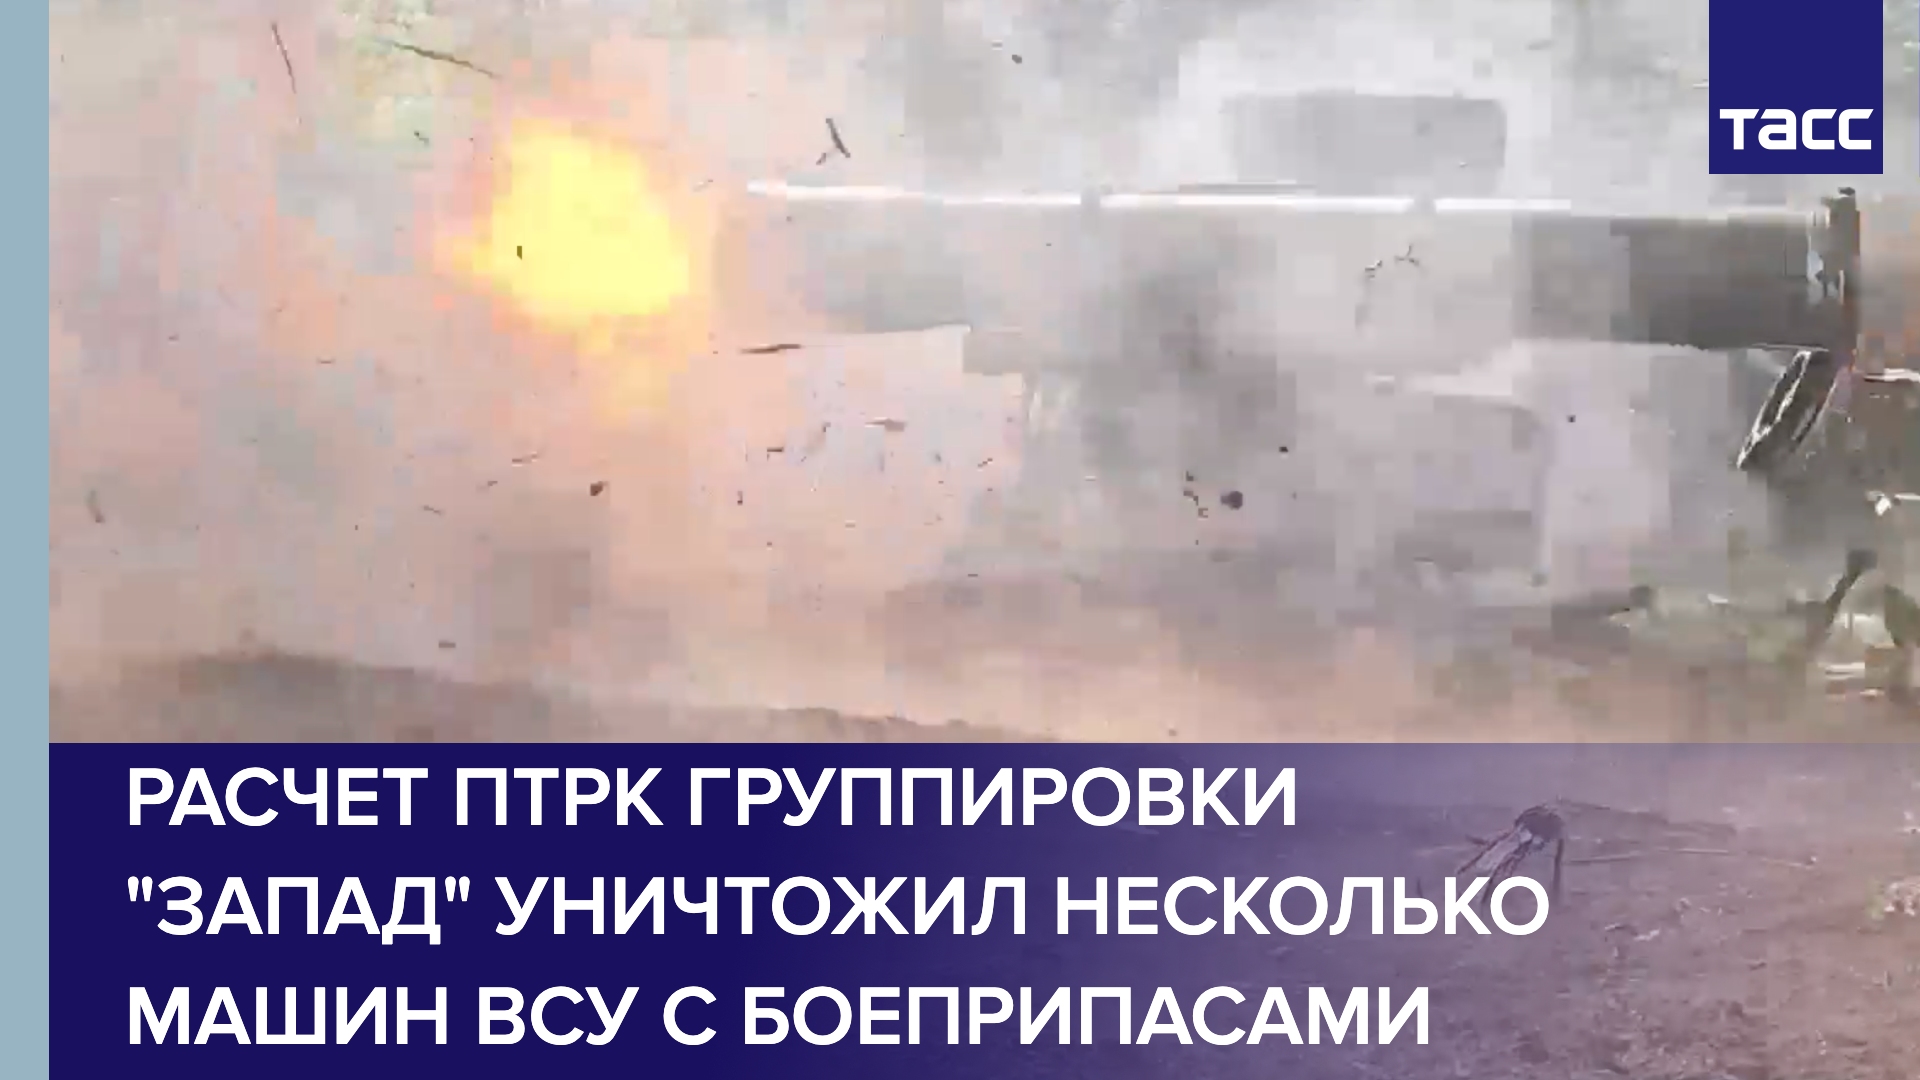 Расчет ПТРК группировки "Запад" уничтожил несколько машин ВСУ с боеприпасами